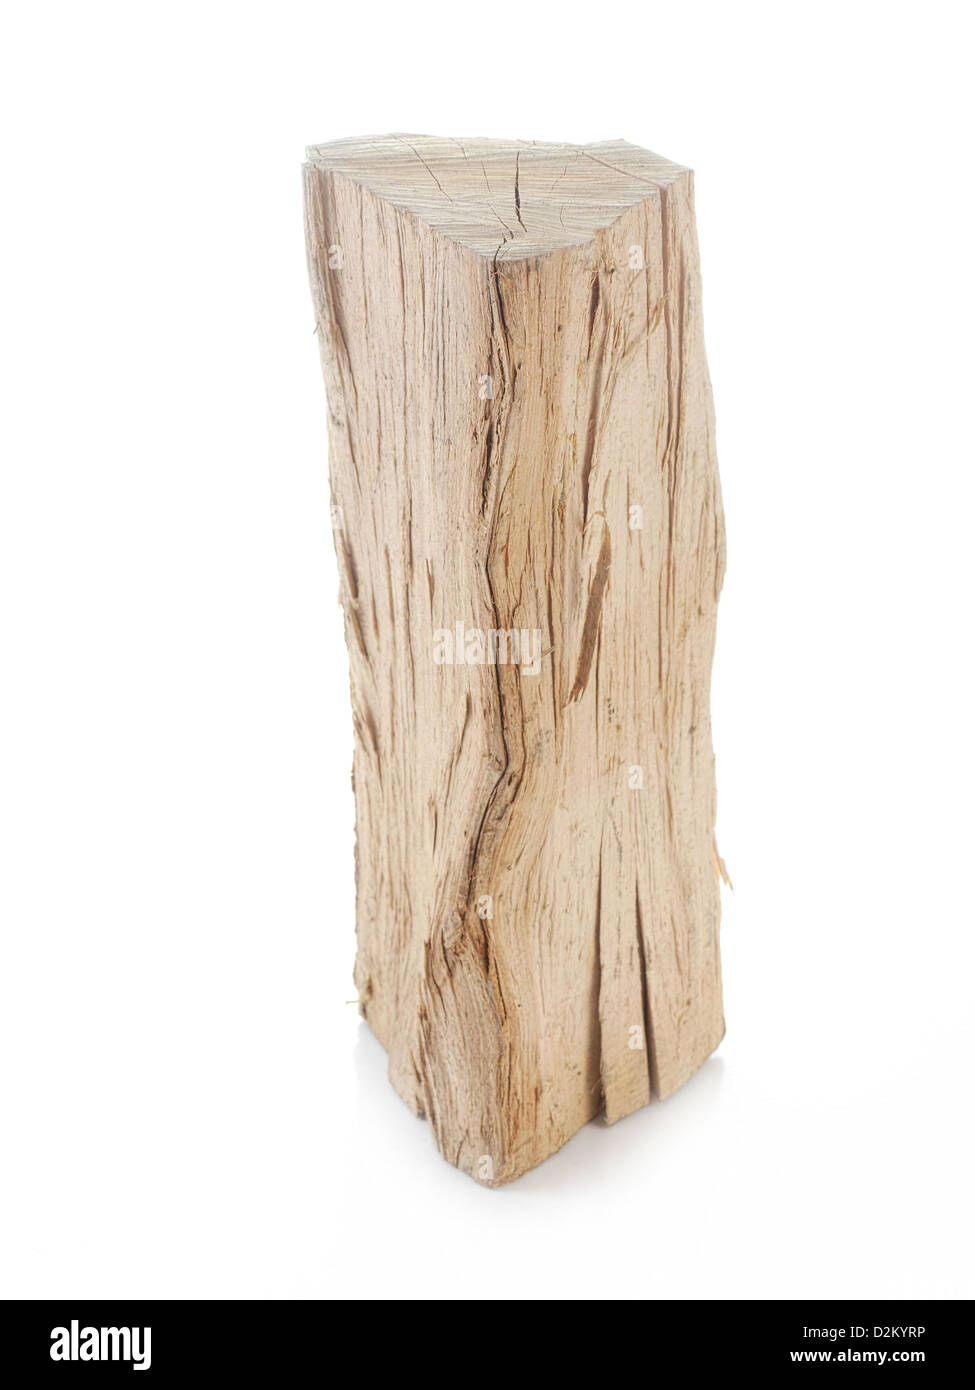 Pieza de madera de haya picado rodada en blanco Foto de stock